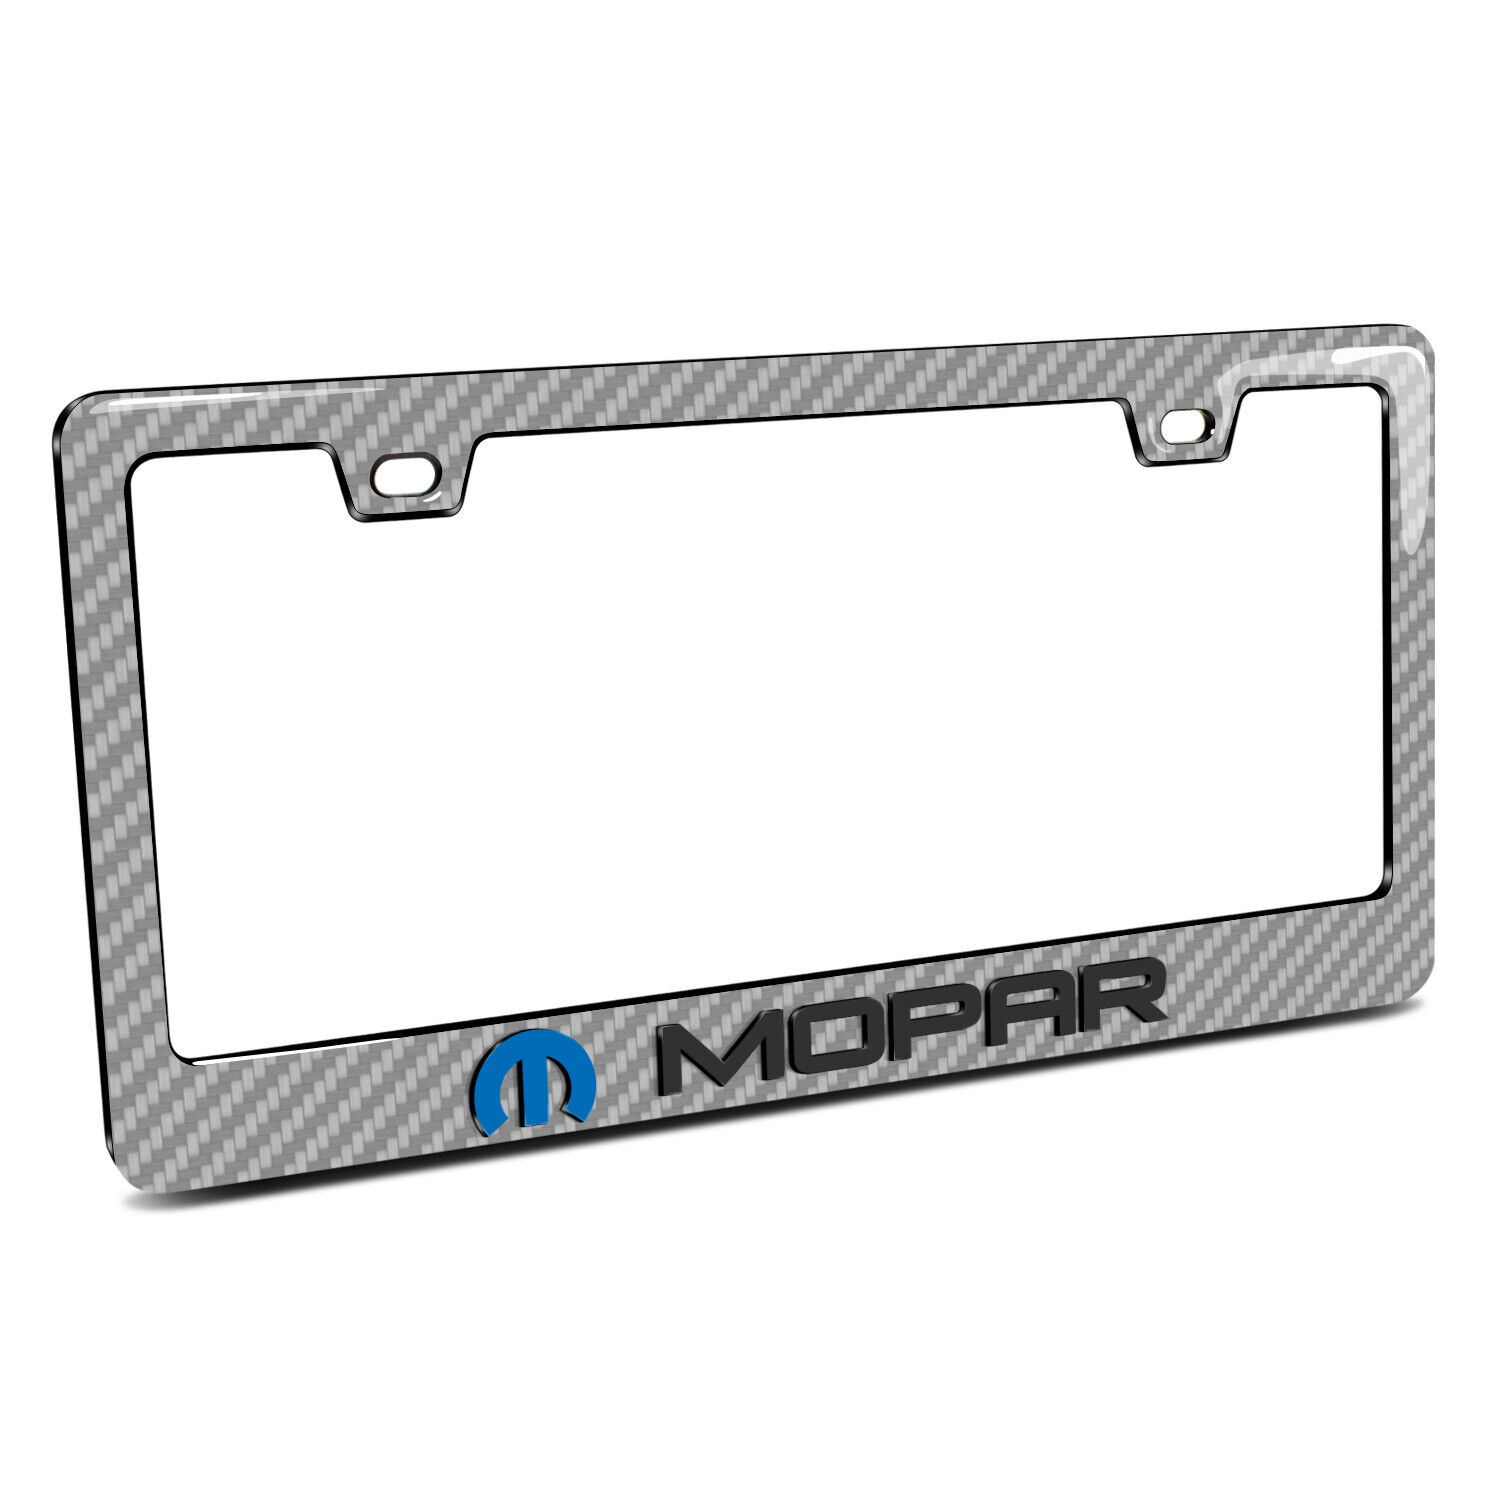 Mopar in 3D Silver Real Carbon Fiber ABS  License Plate Frame